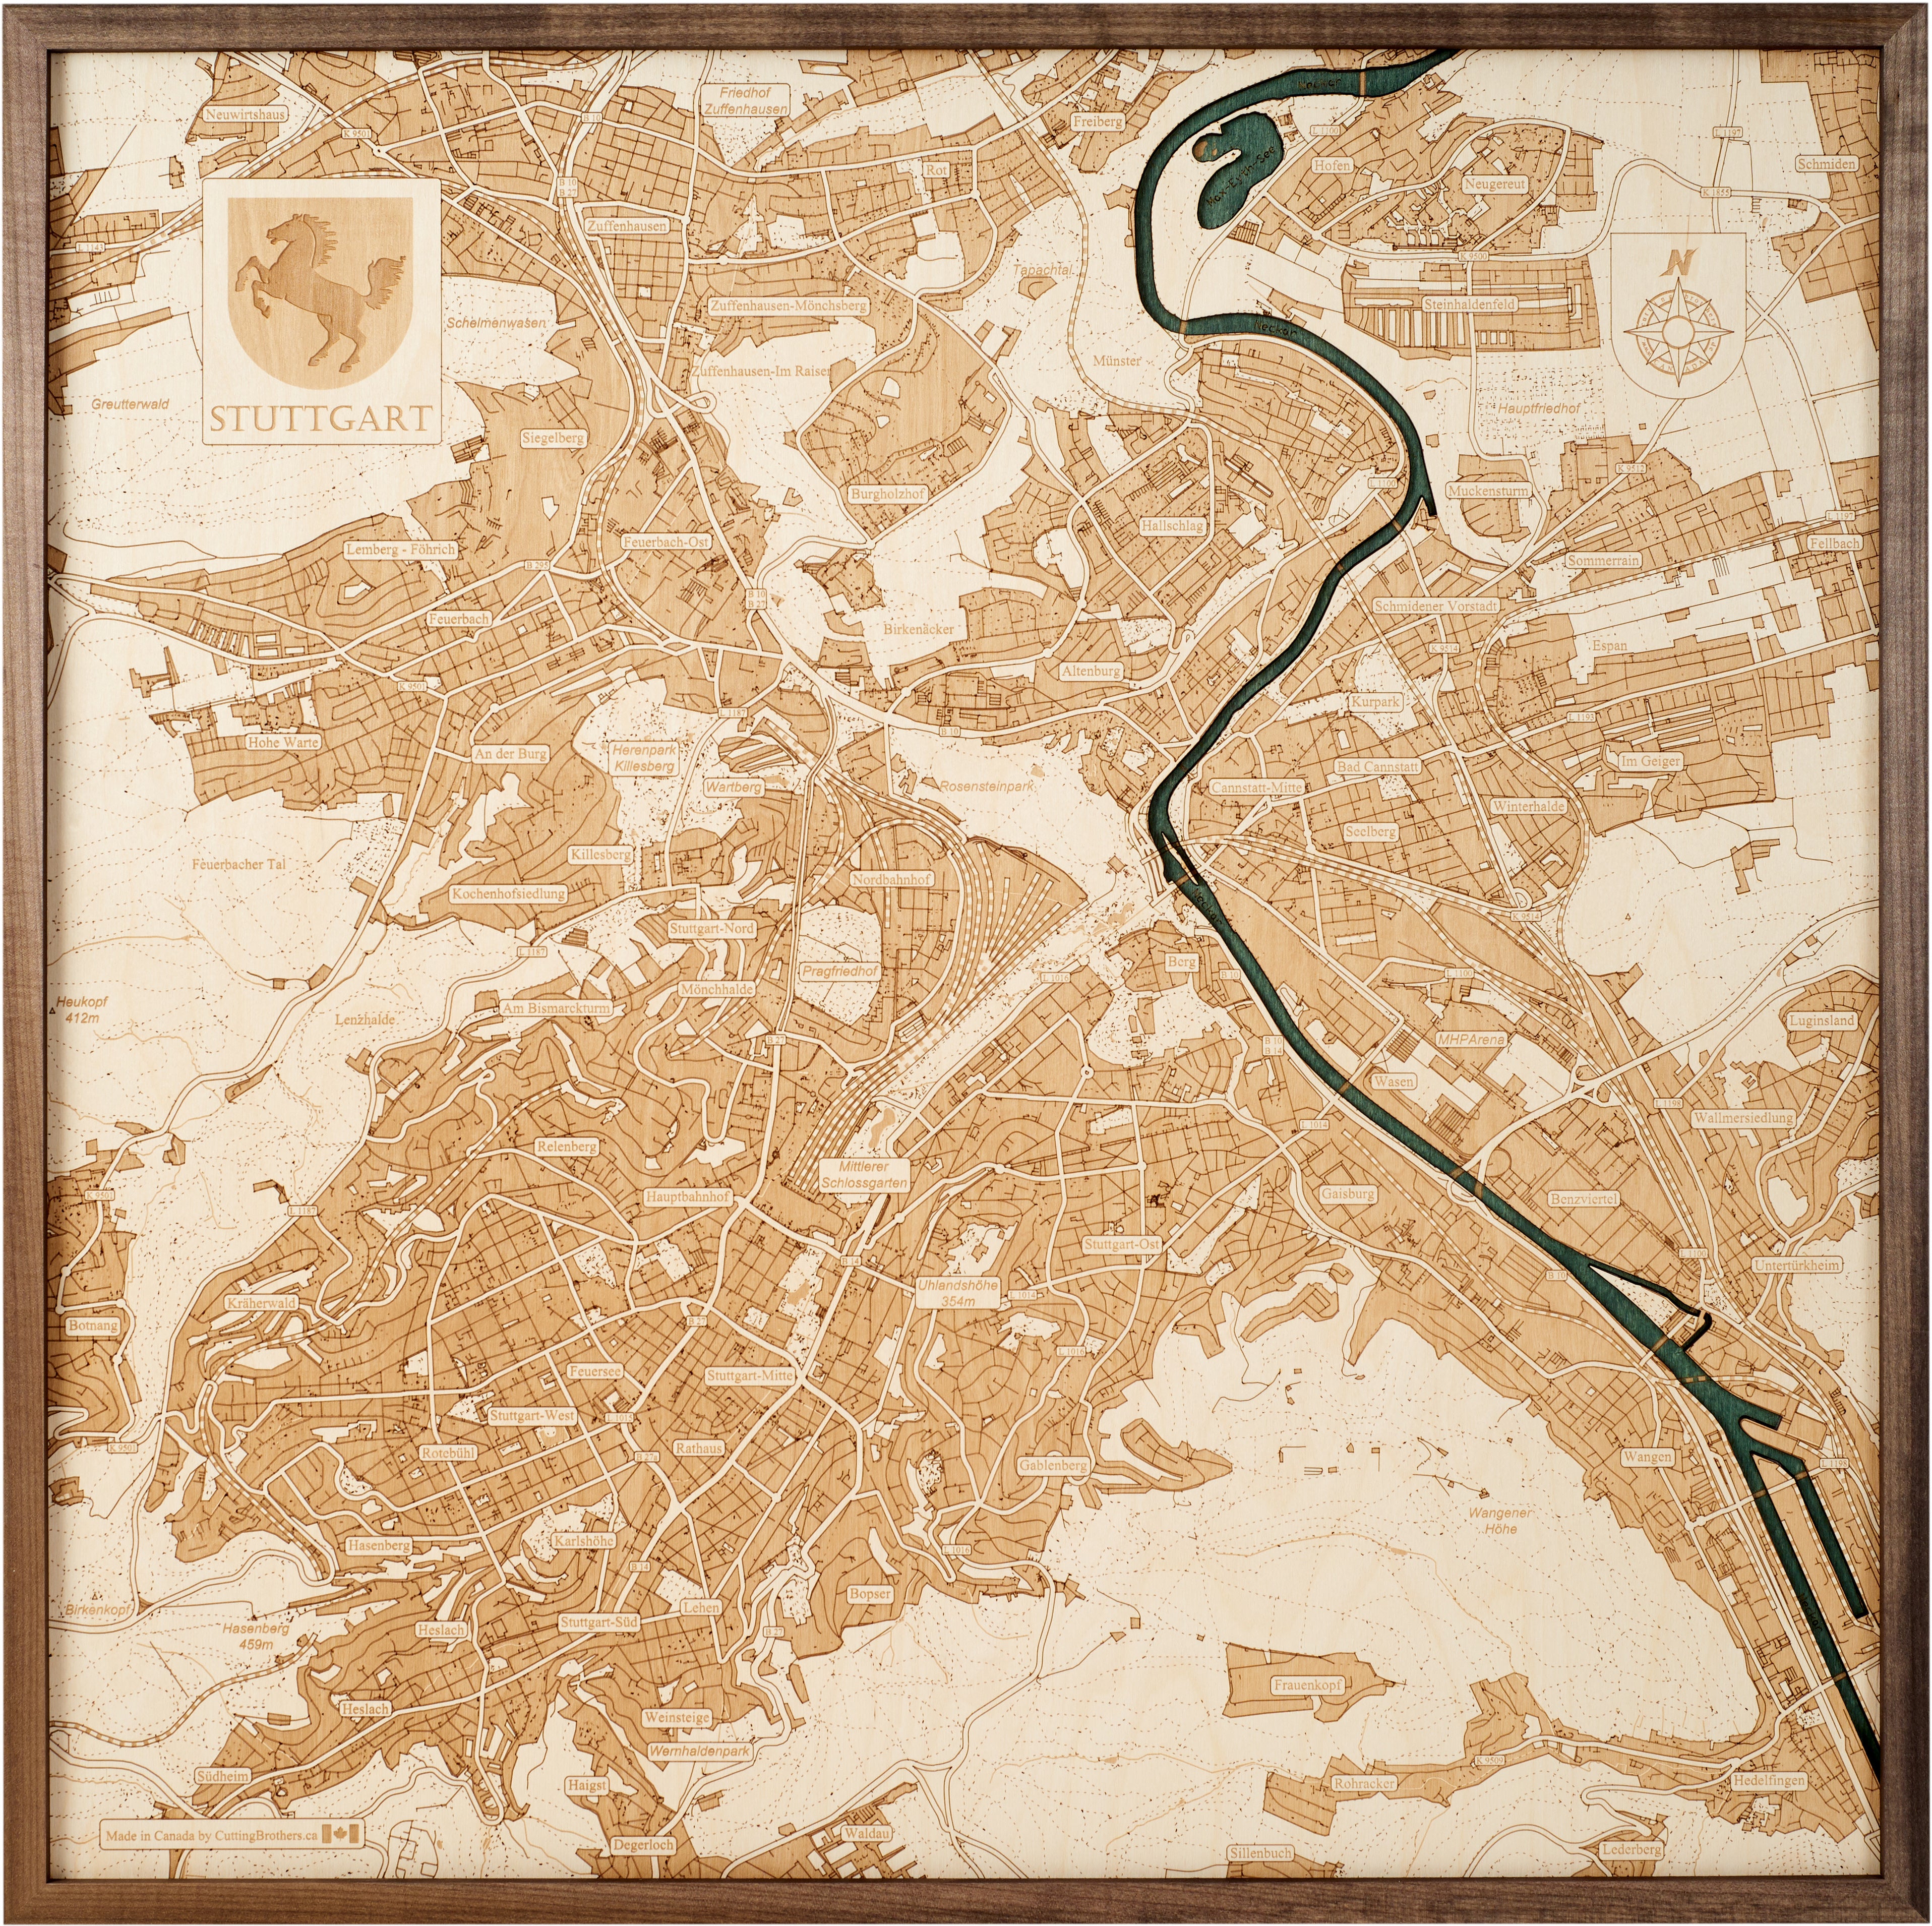 STUTTGART 3D wooden wall map - version L 